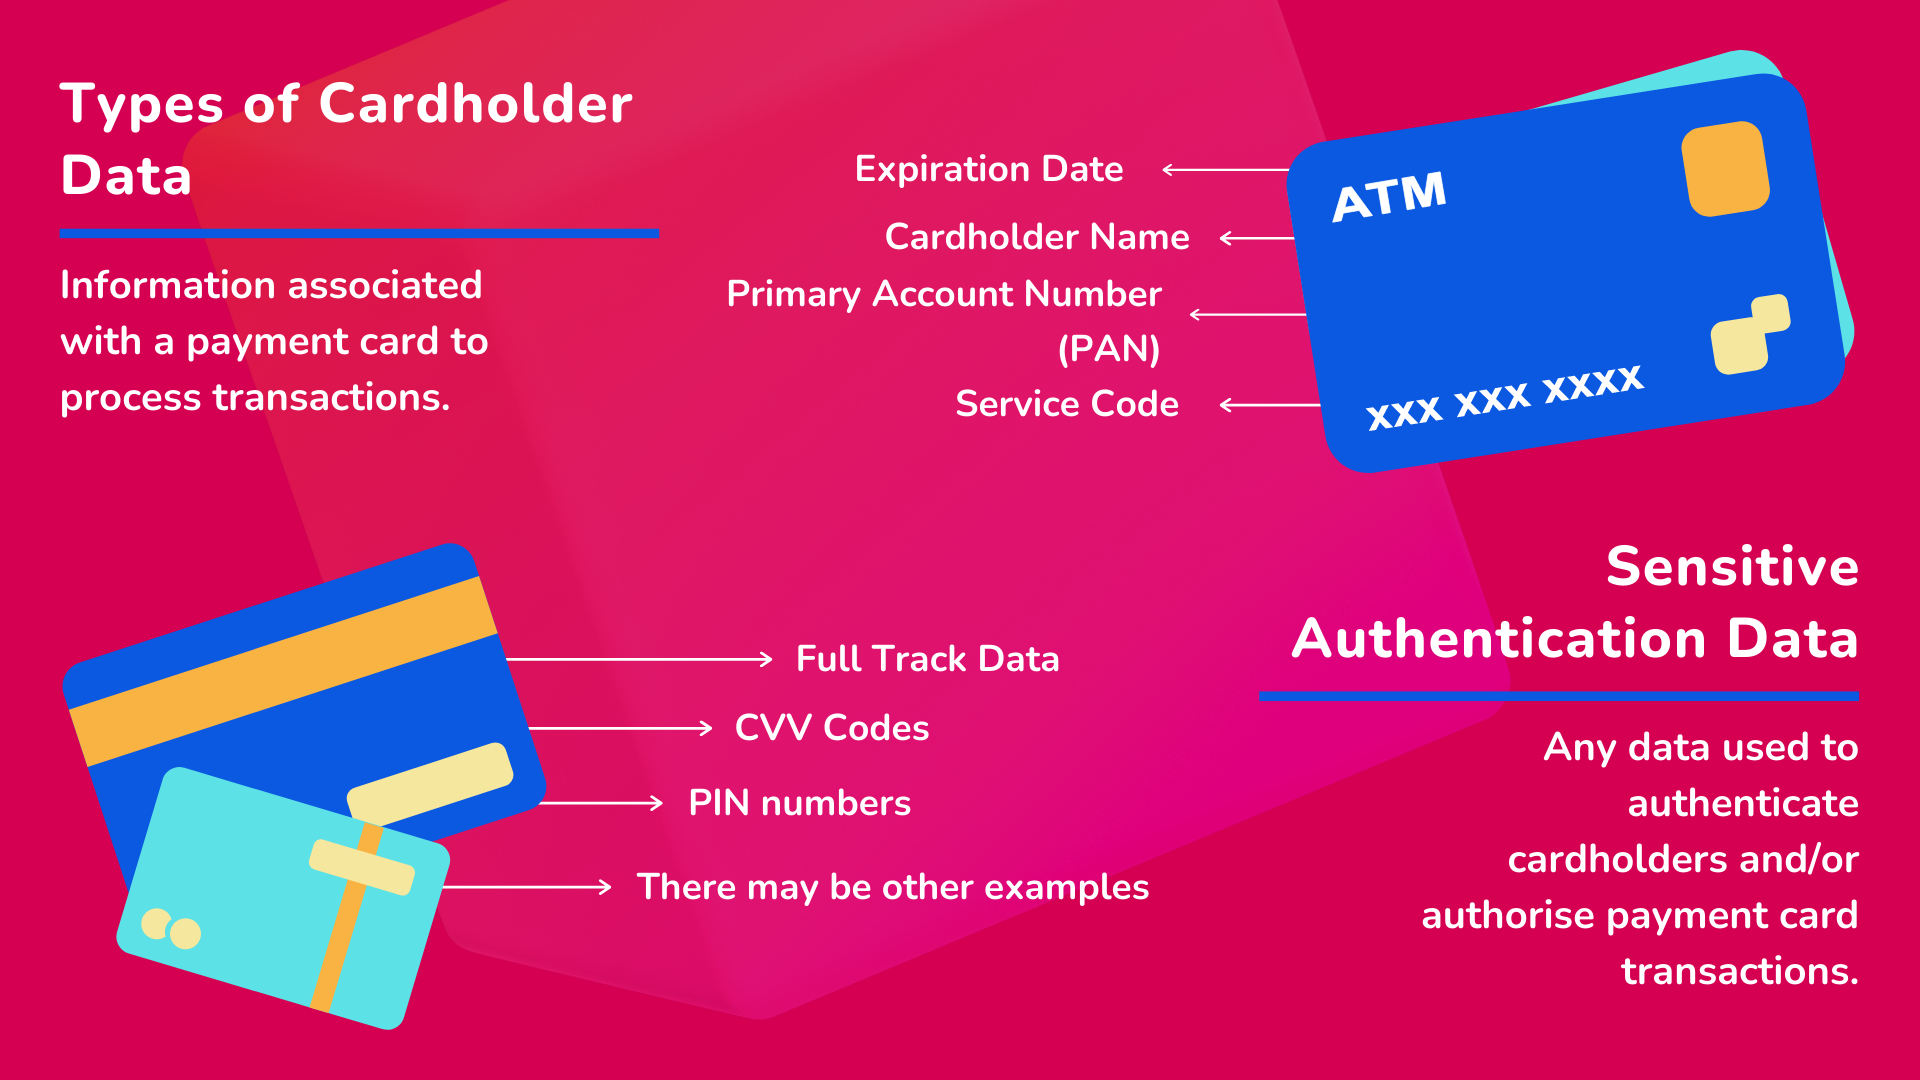 Types of cardholder data